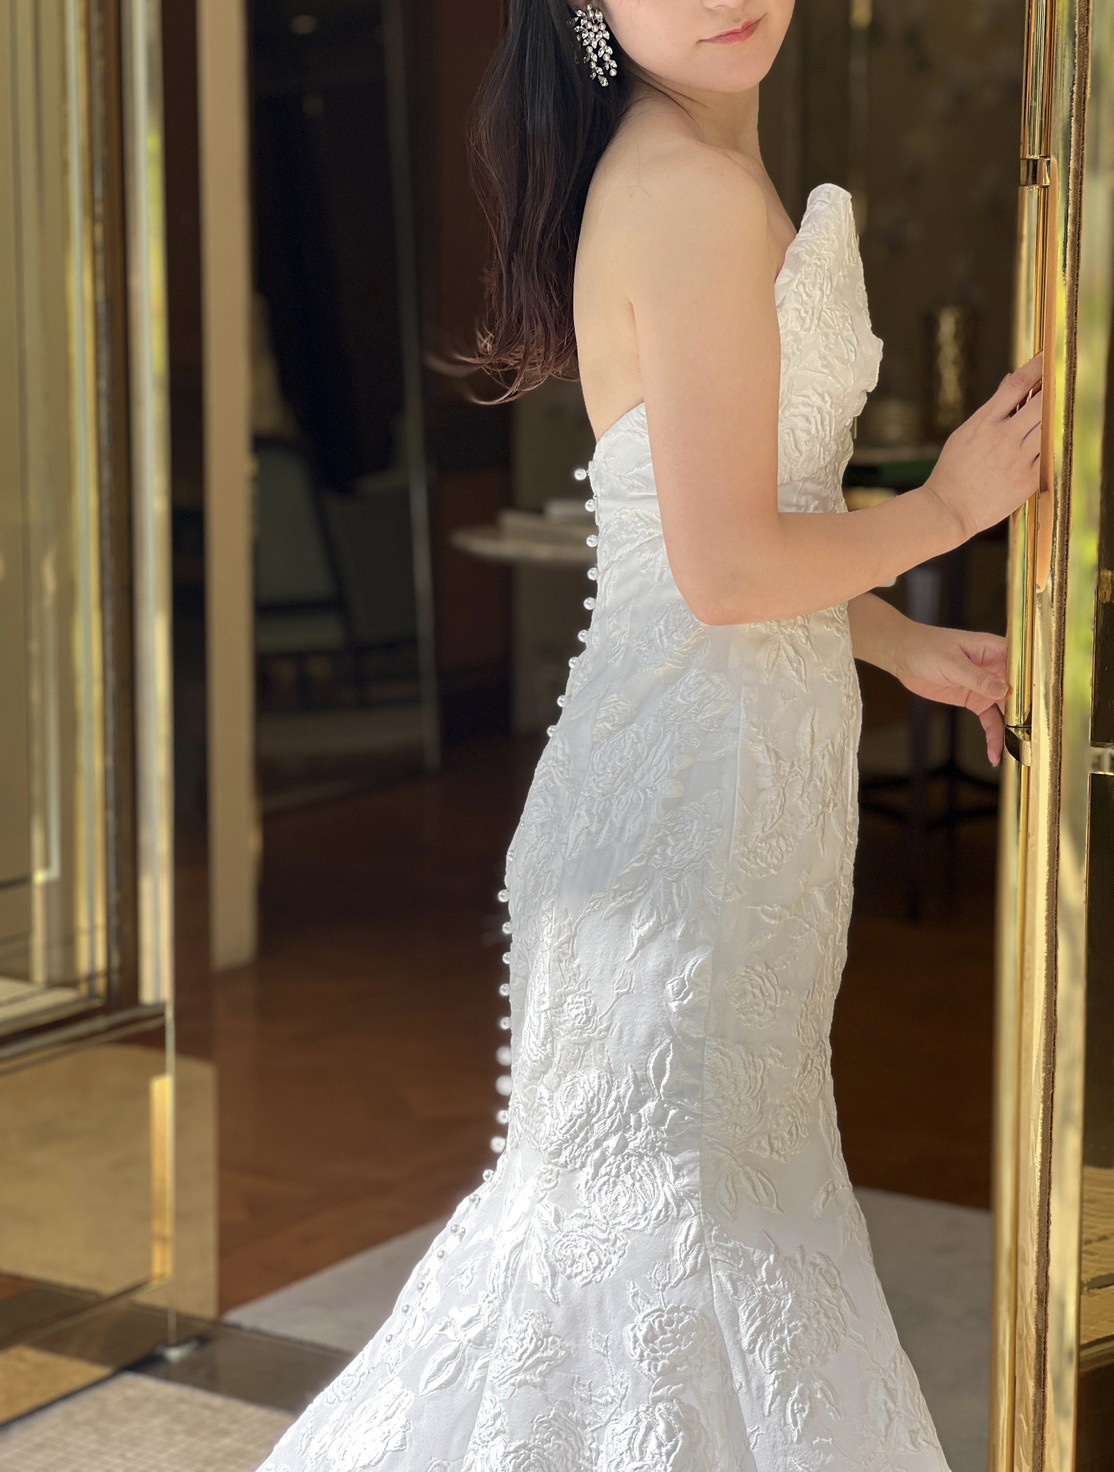 背中に一列に連なるパールが美しいガーデン挙式やリゾート婚におすすめのモニークルイリエの新作のウェディングドレスのご紹介